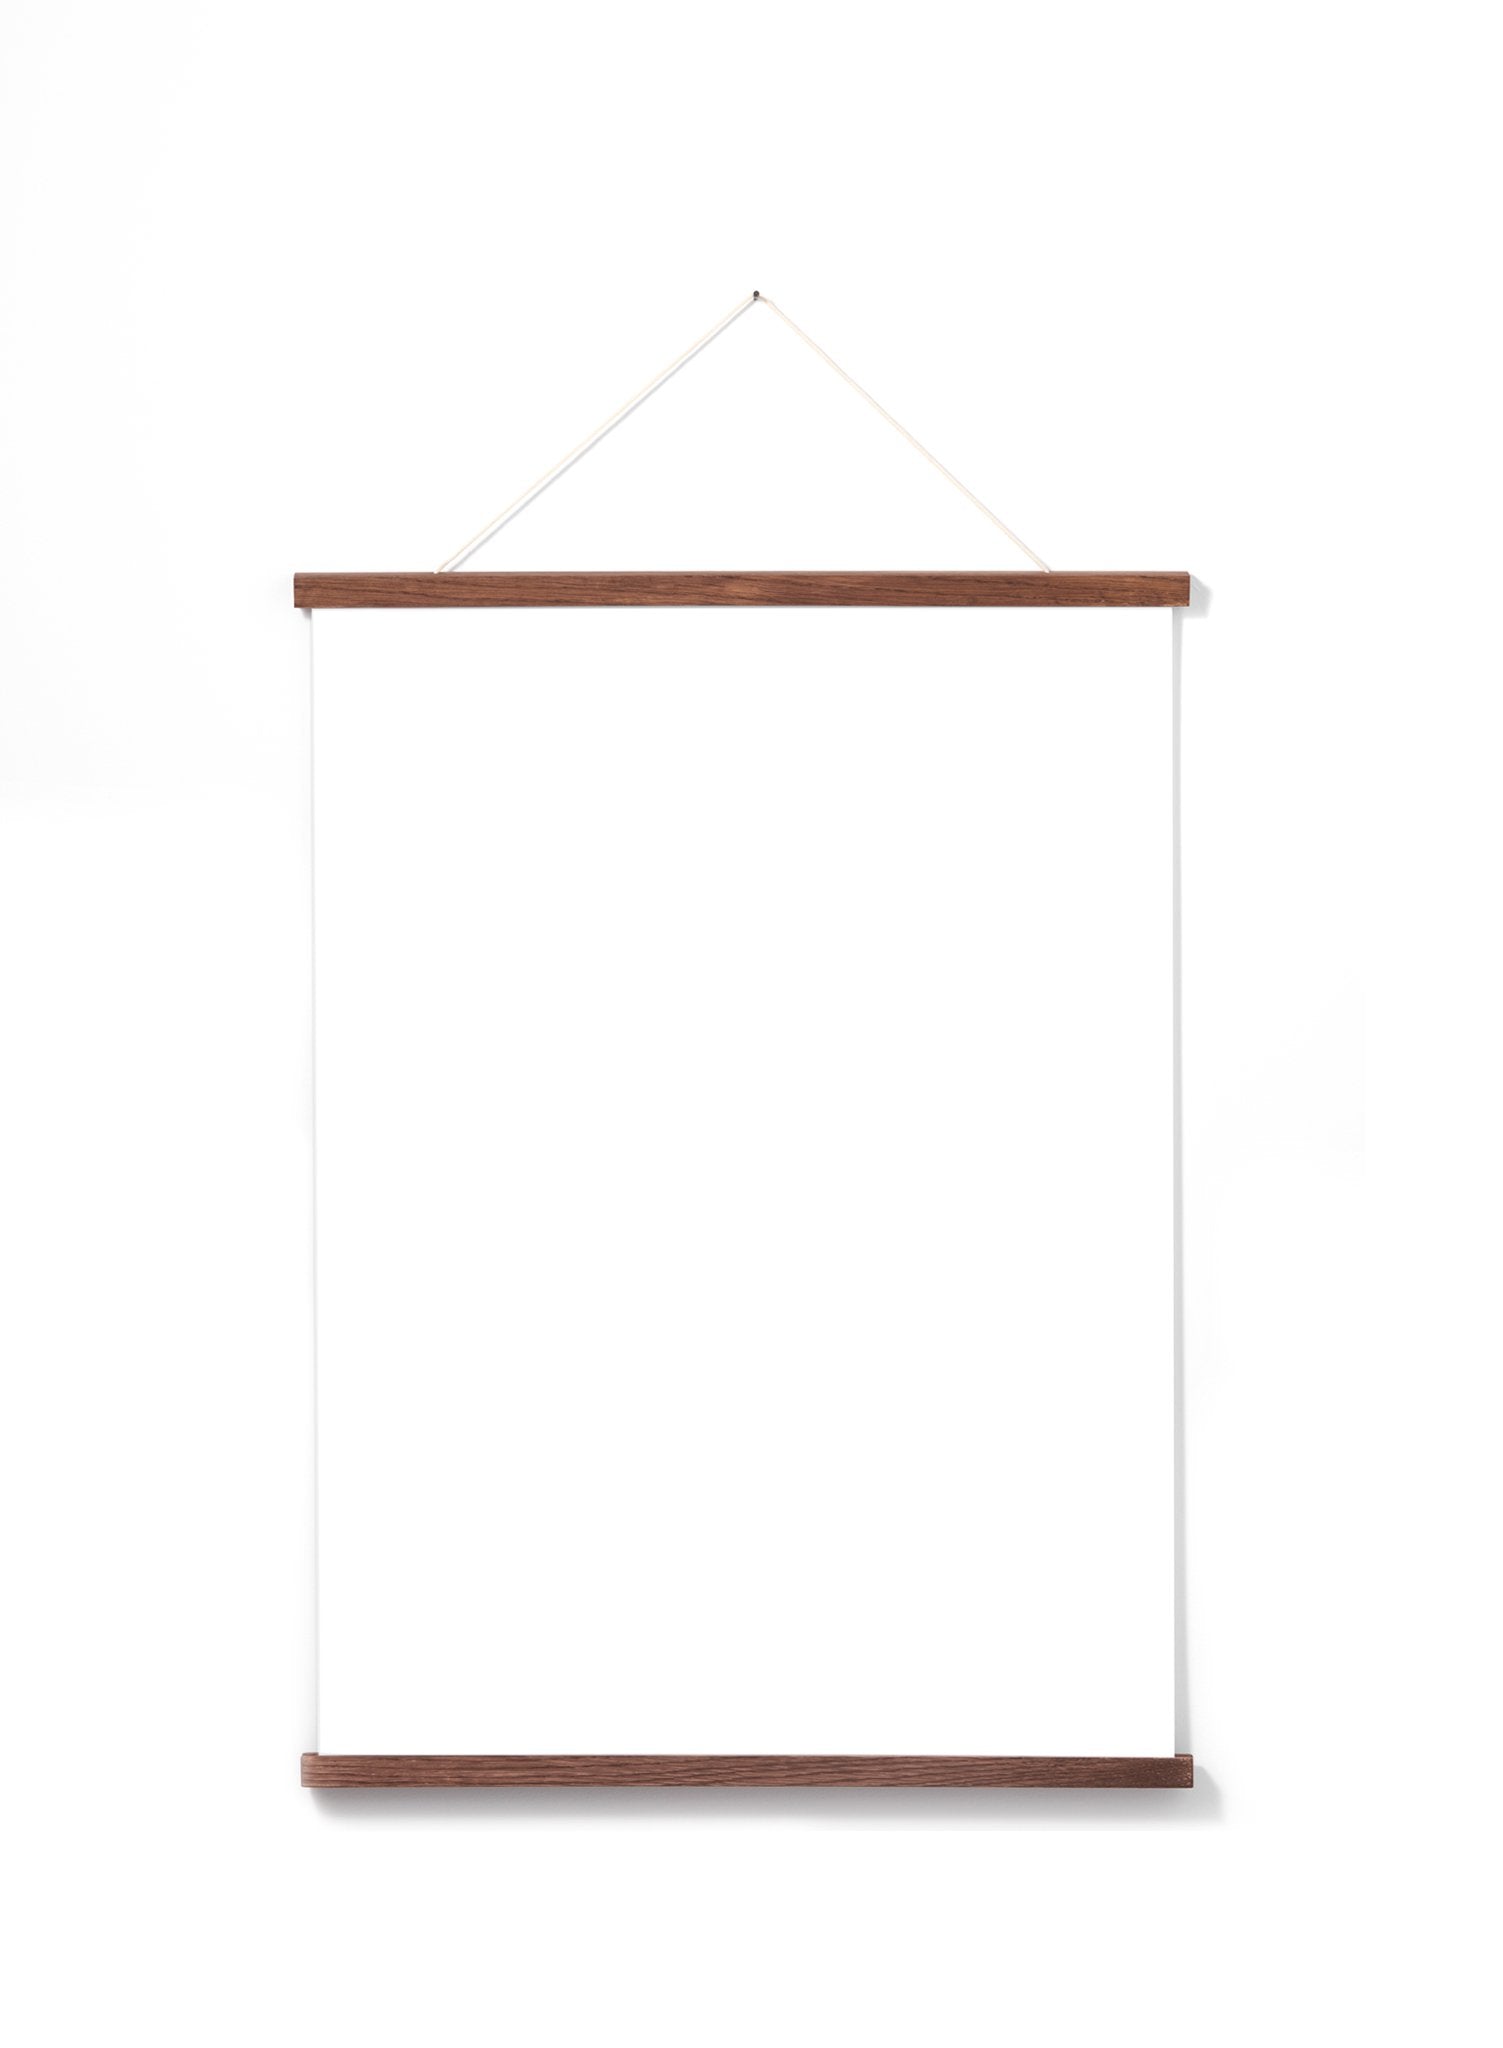 Poster Hanger Dark Oak 20” in, magnet fastener